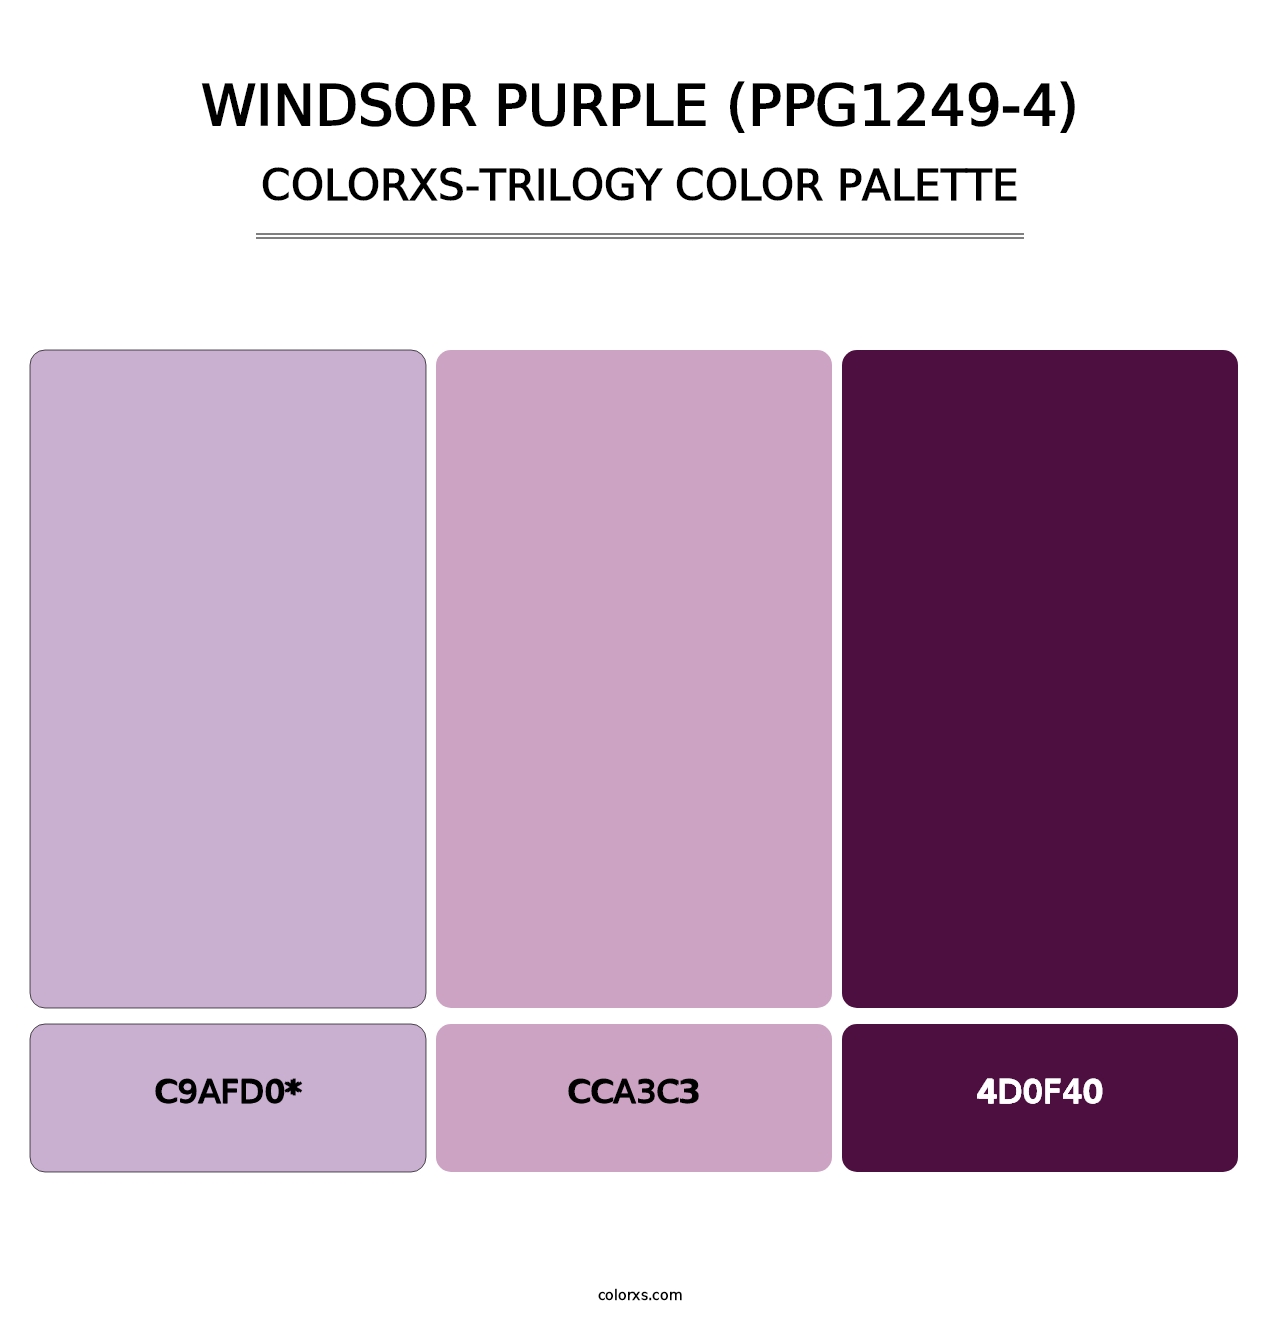 Windsor Purple (PPG1249-4) - Colorxs Trilogy Palette